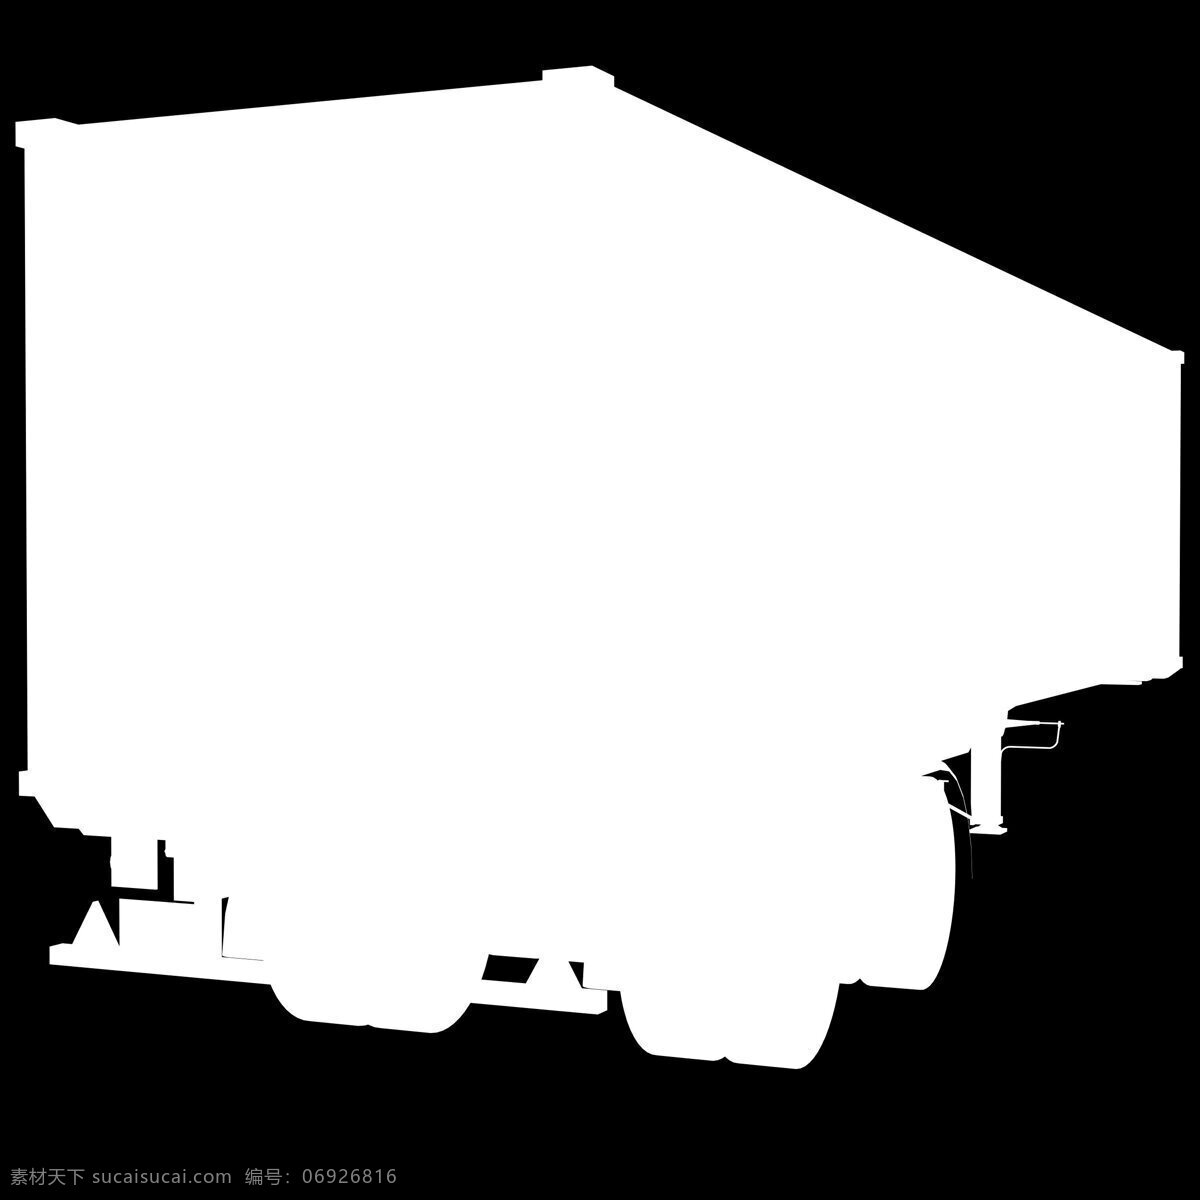 集装箱 运输车 卡车 货车 3d 模型 交通 工具集 装箱 其他3d模型